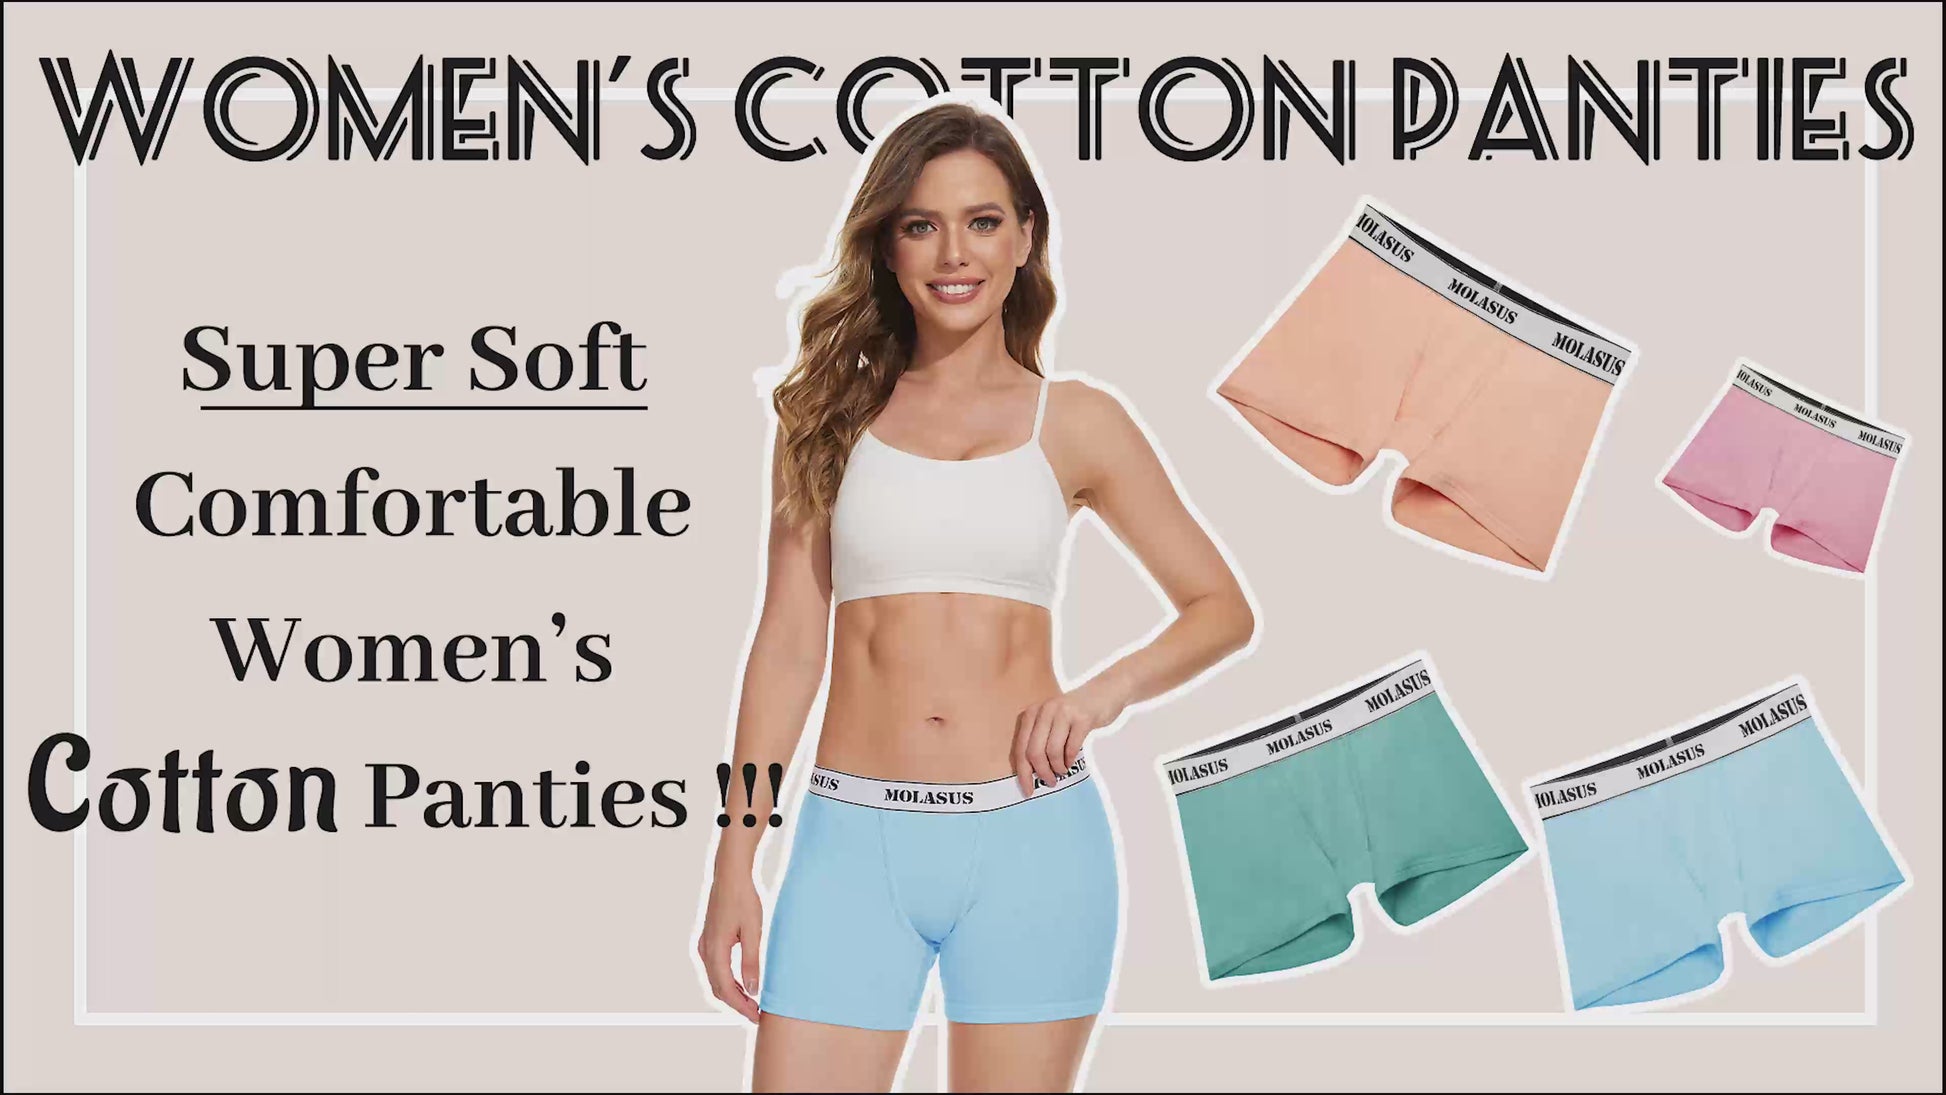 Molasus 4.5 Inseam Womens Cotton Boxer Briefs Underwear Boy Shorts Pa